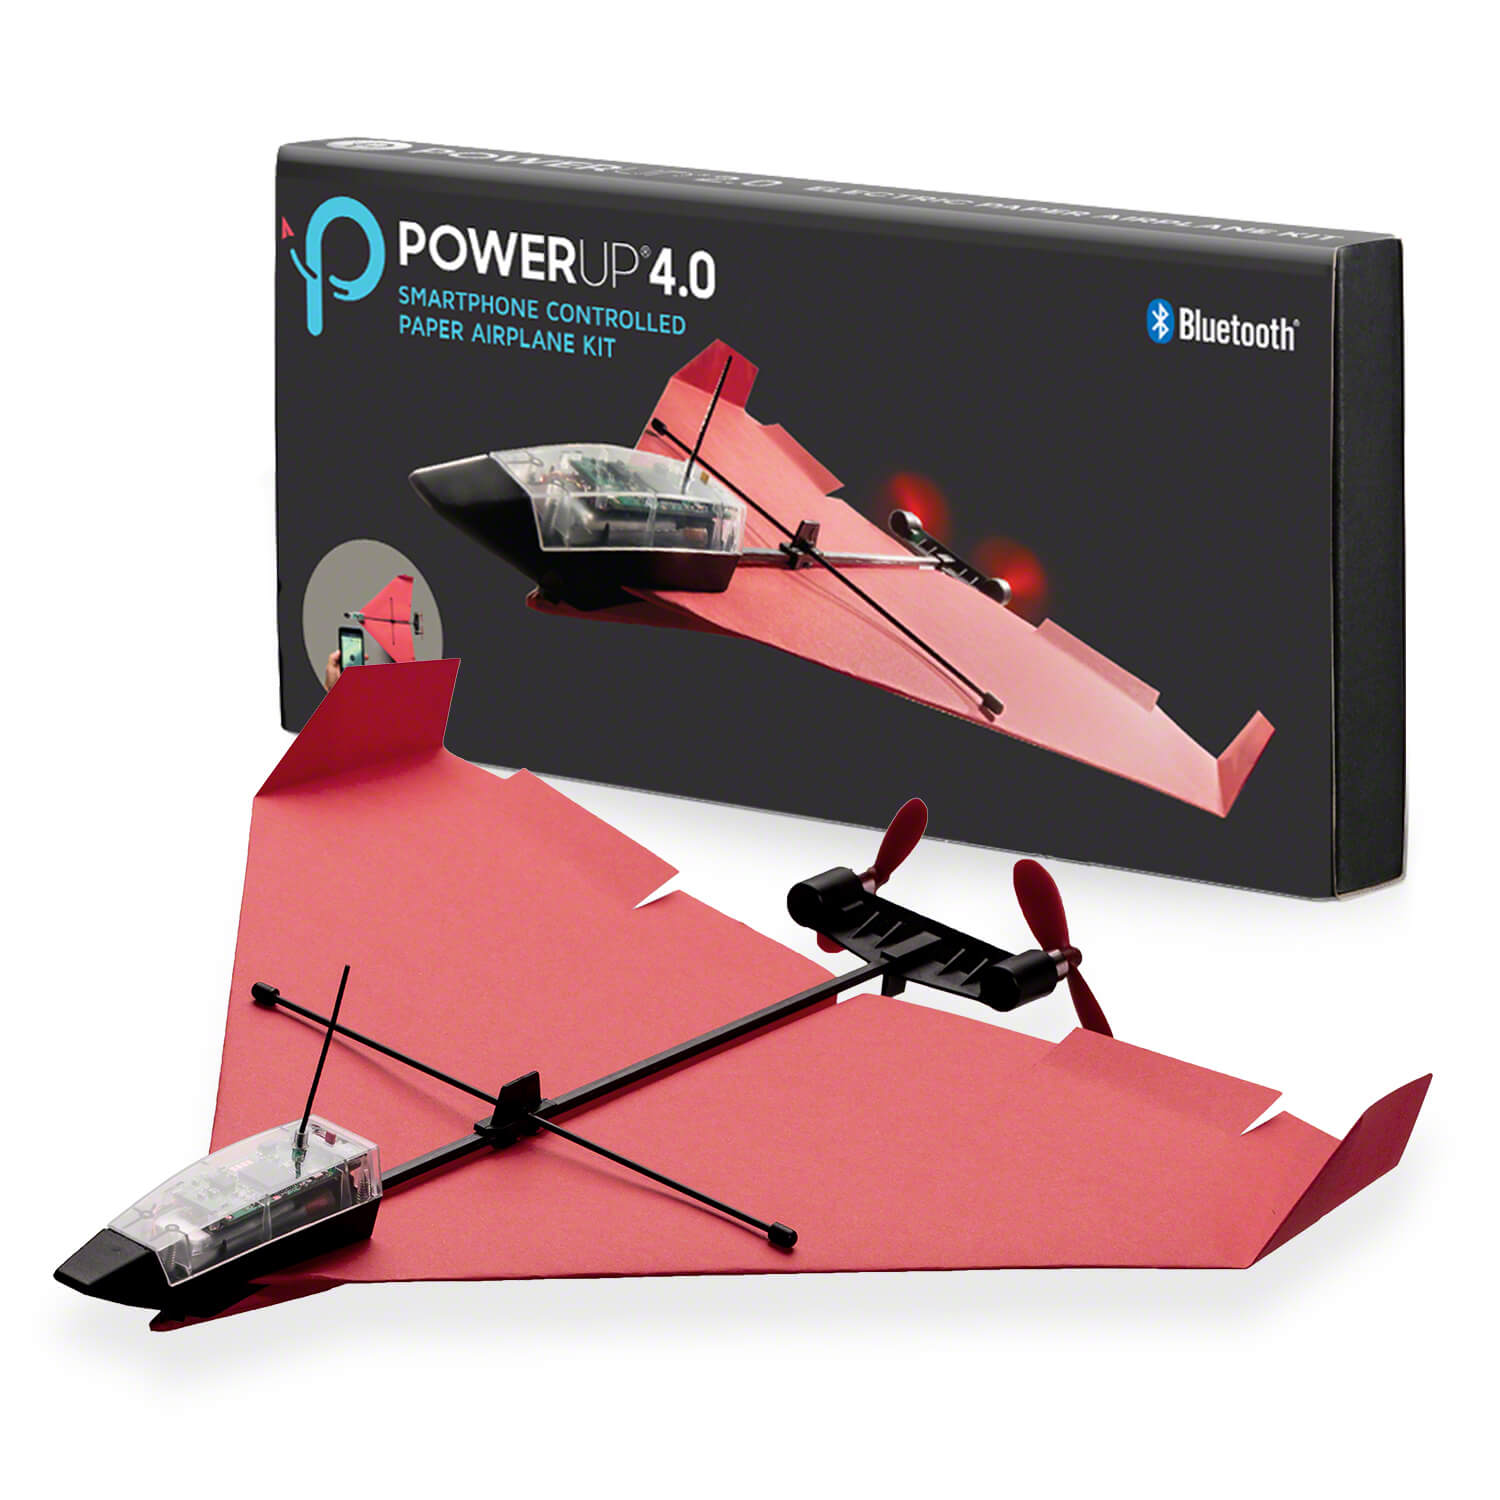 少数有 スマホ紙飛行機 電動エアプレーンキット 送料無料 Controlled Airplane Smartphone Power Kit Paper 4 0 新品 3r Pwr01bk Up